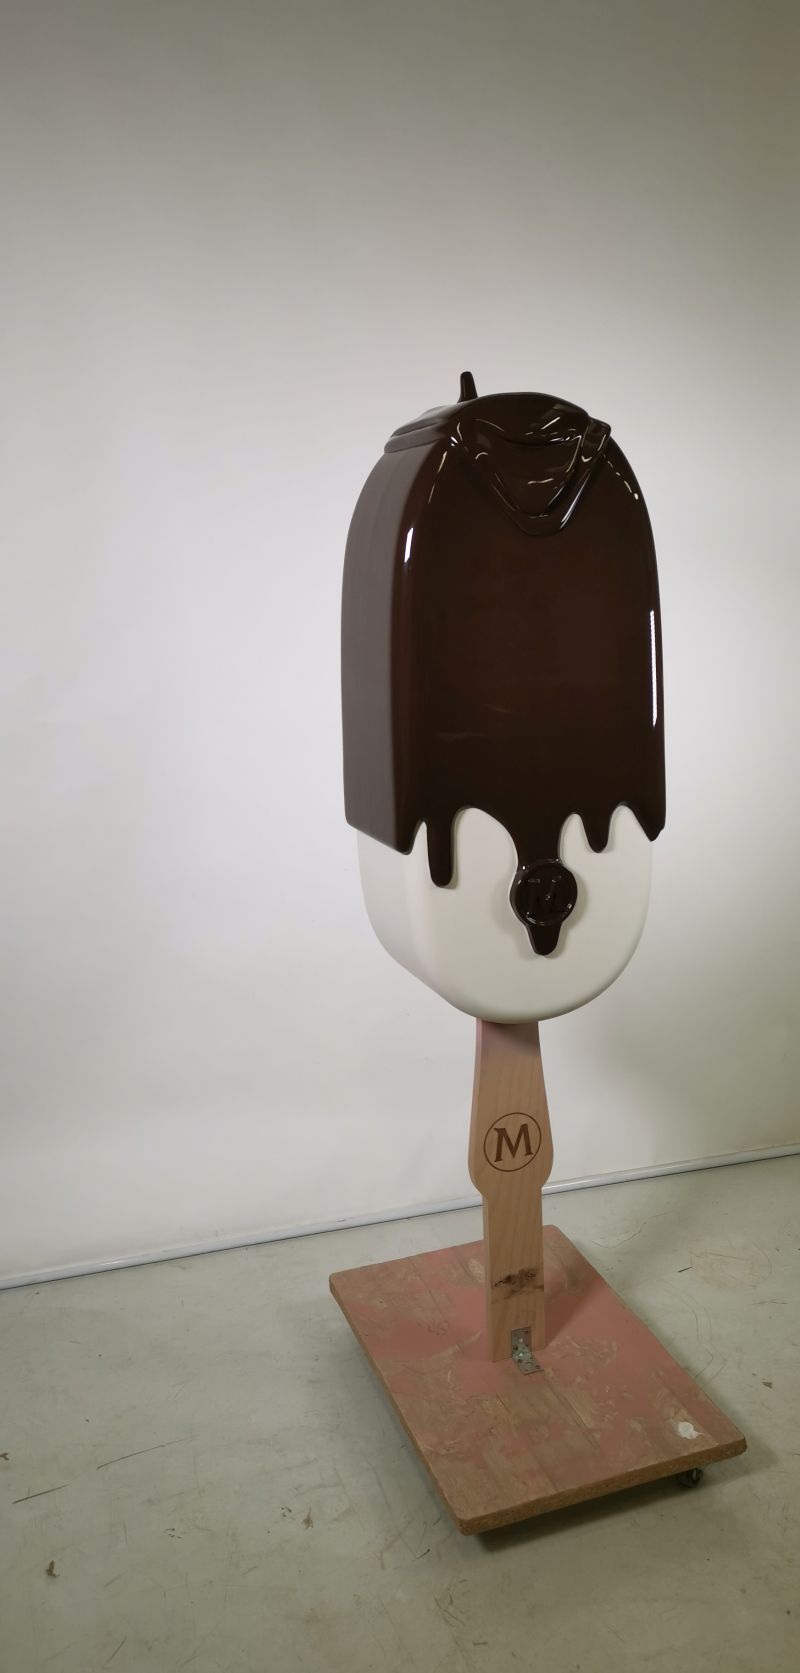 Reklamní předměty XL zmrzliny